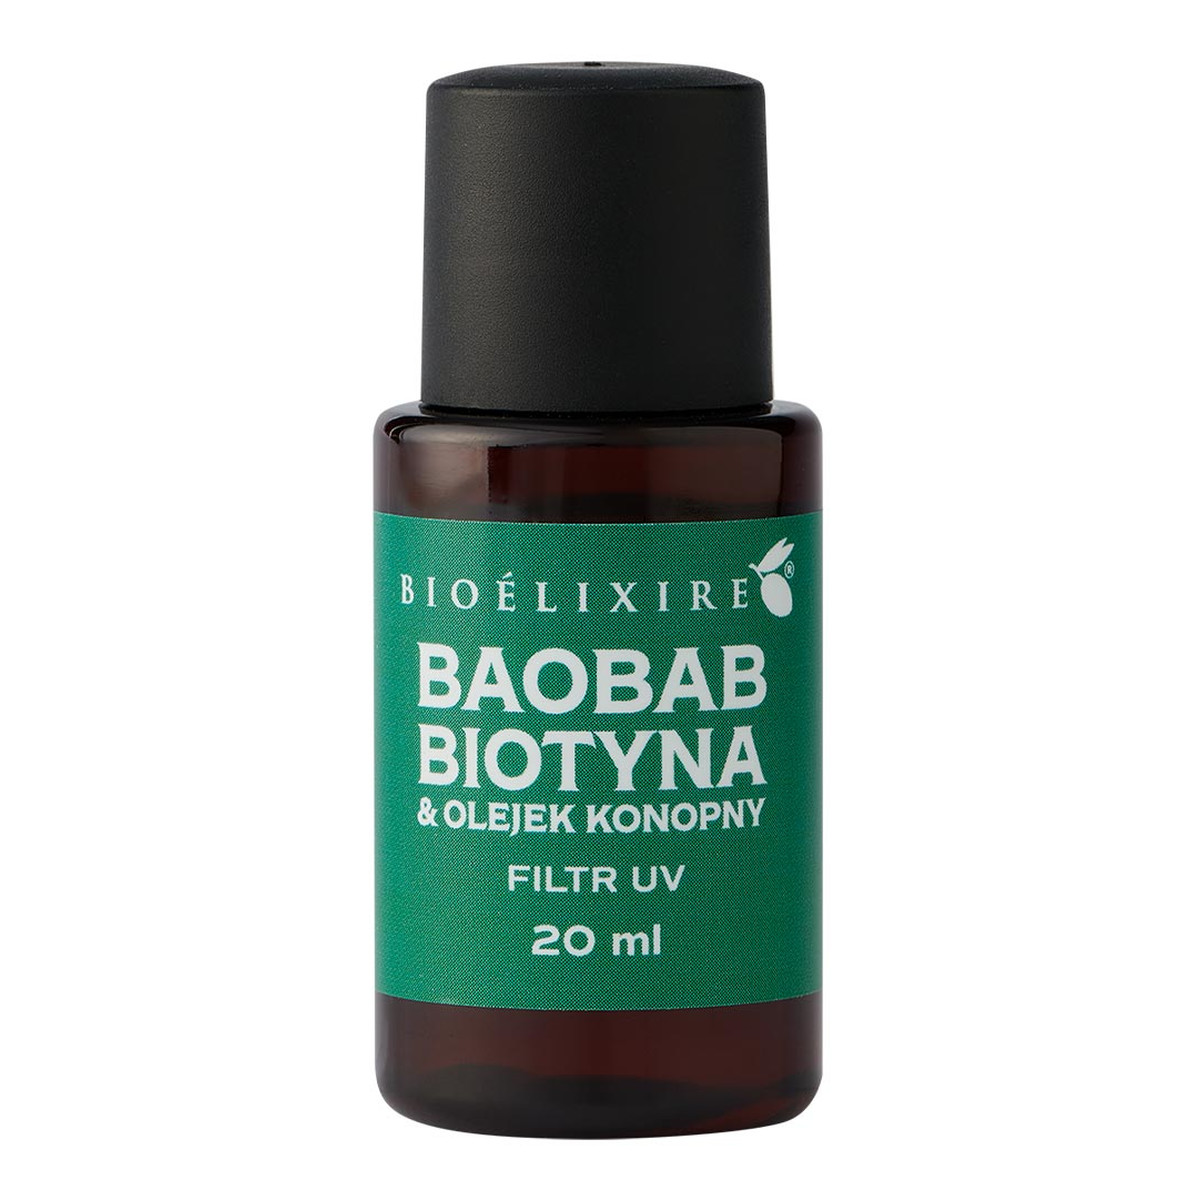 Bioelixire Silikonowe serum do włosów Baobab + Biotyna & Olejek konopny 20ml